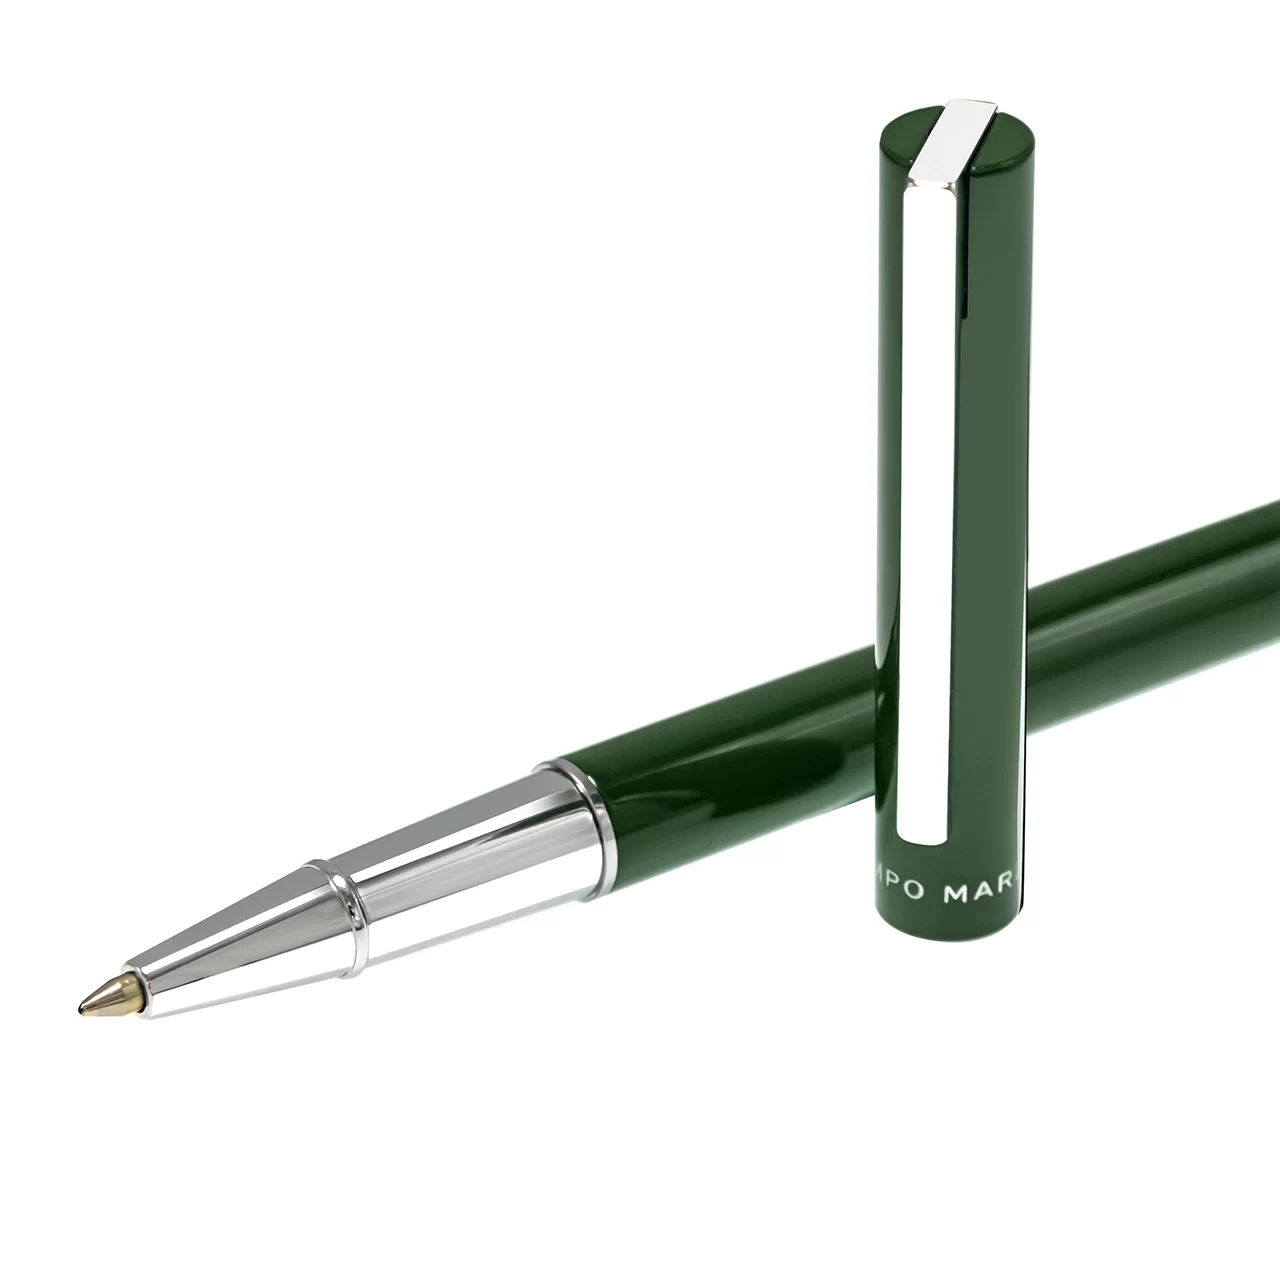 κοντινό πλάνο ενός στυλό ξαπλωμένο σε άσπρο φόντο με το εξωτερικό του να είναι πράσινο με ασημένιες λεπτομέρειες και το καπάκι του να στέκεται δίπλα